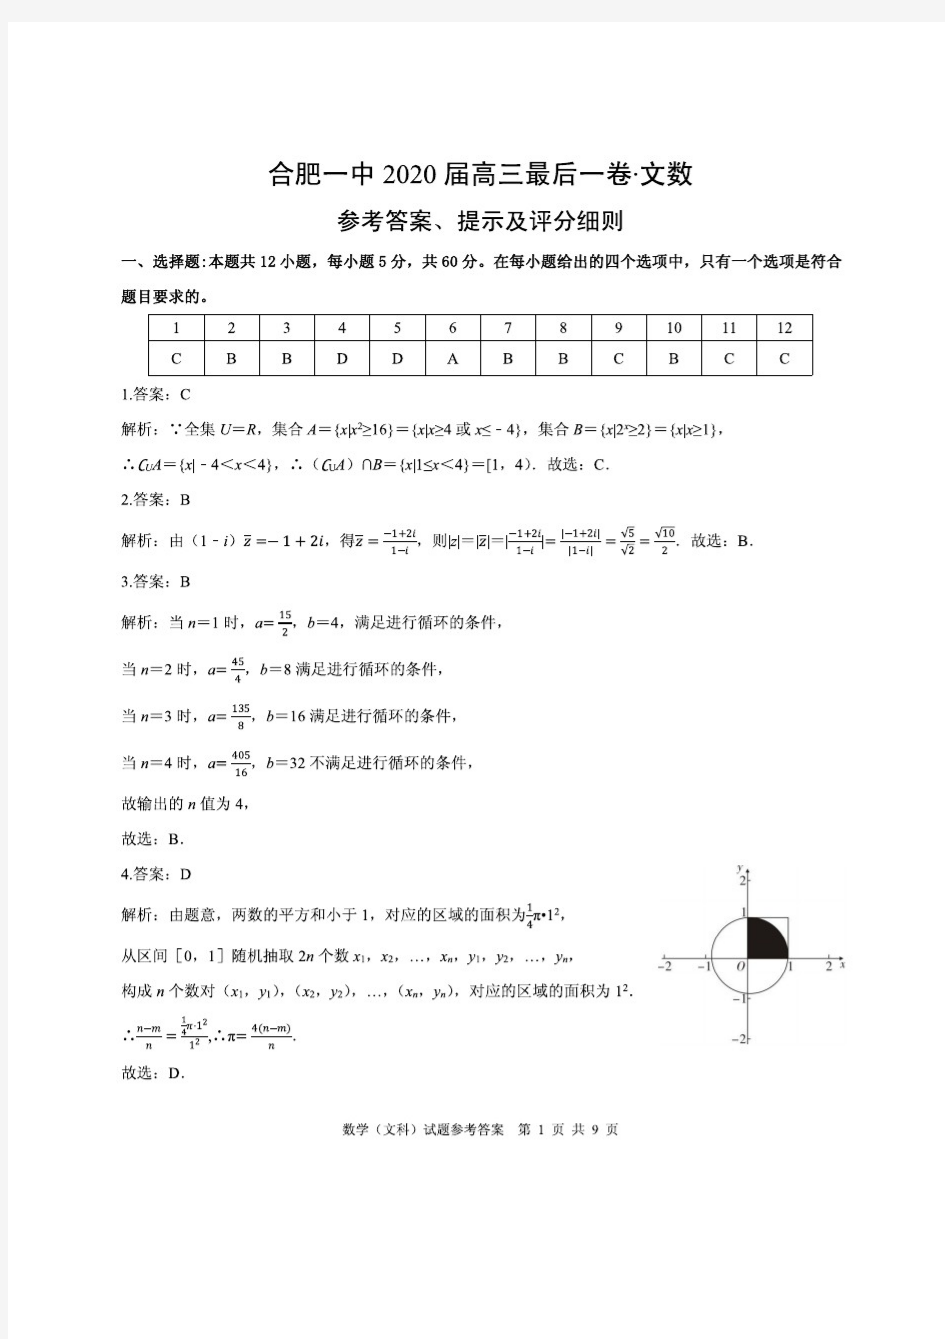 安徽省合肥一中2020届高三最后一卷数学(文)试题 图片版含解析答案